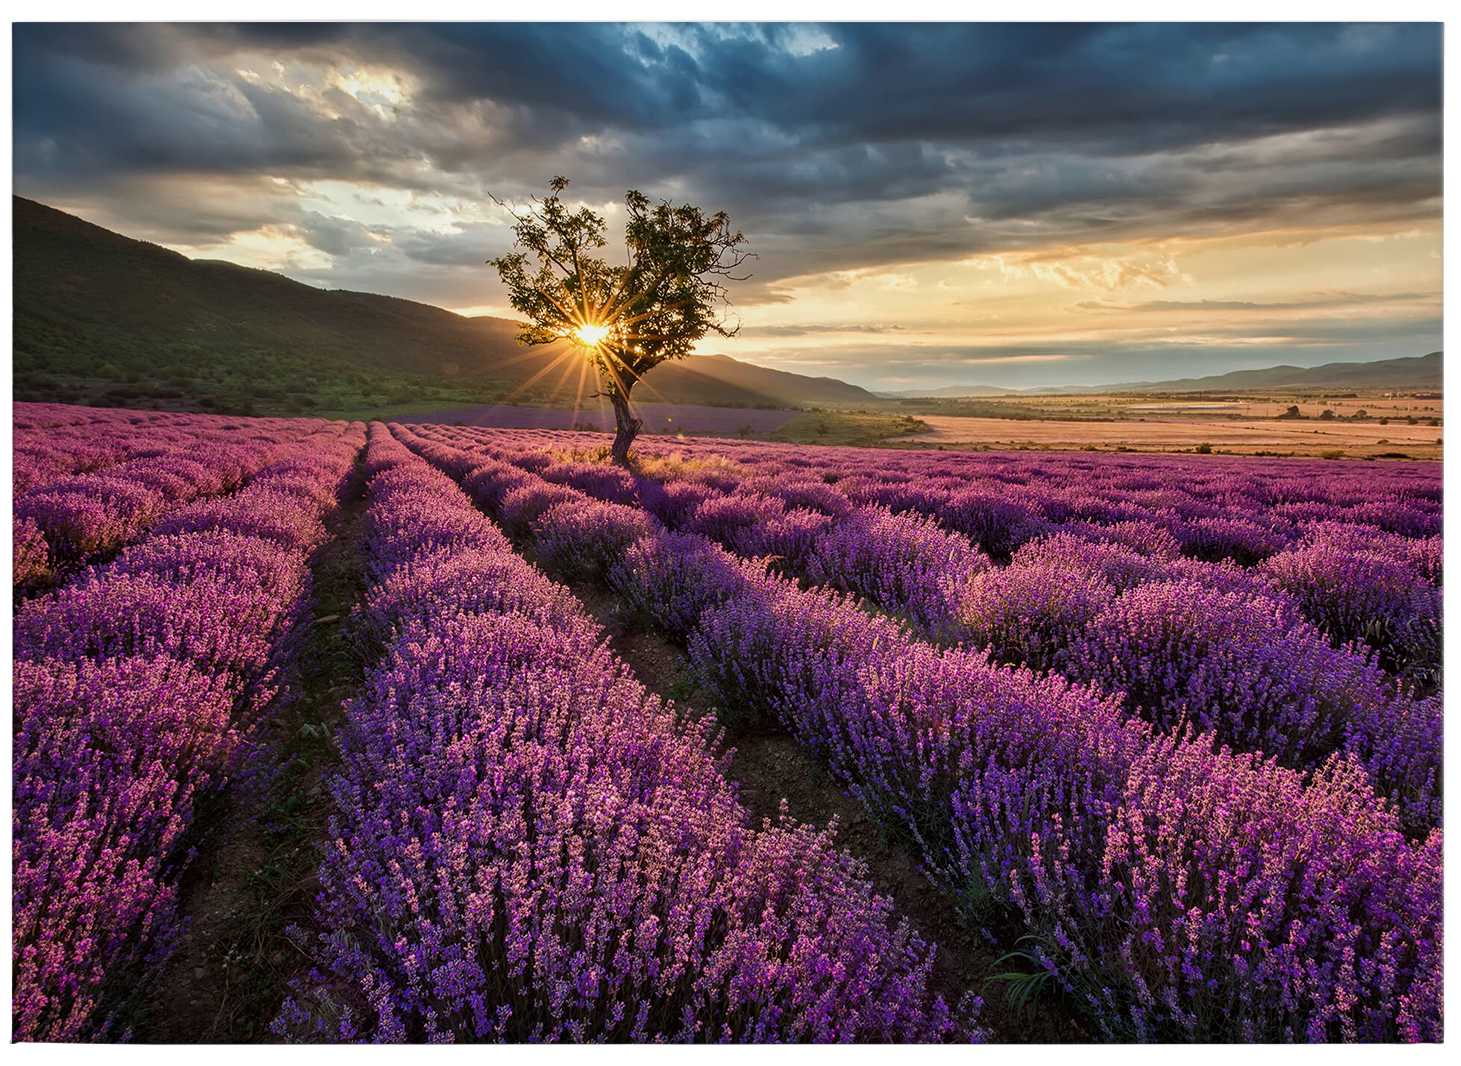             Frankreich Leinwandbild Lavendel in der Provence – 0,70 m x 0,50 m
        